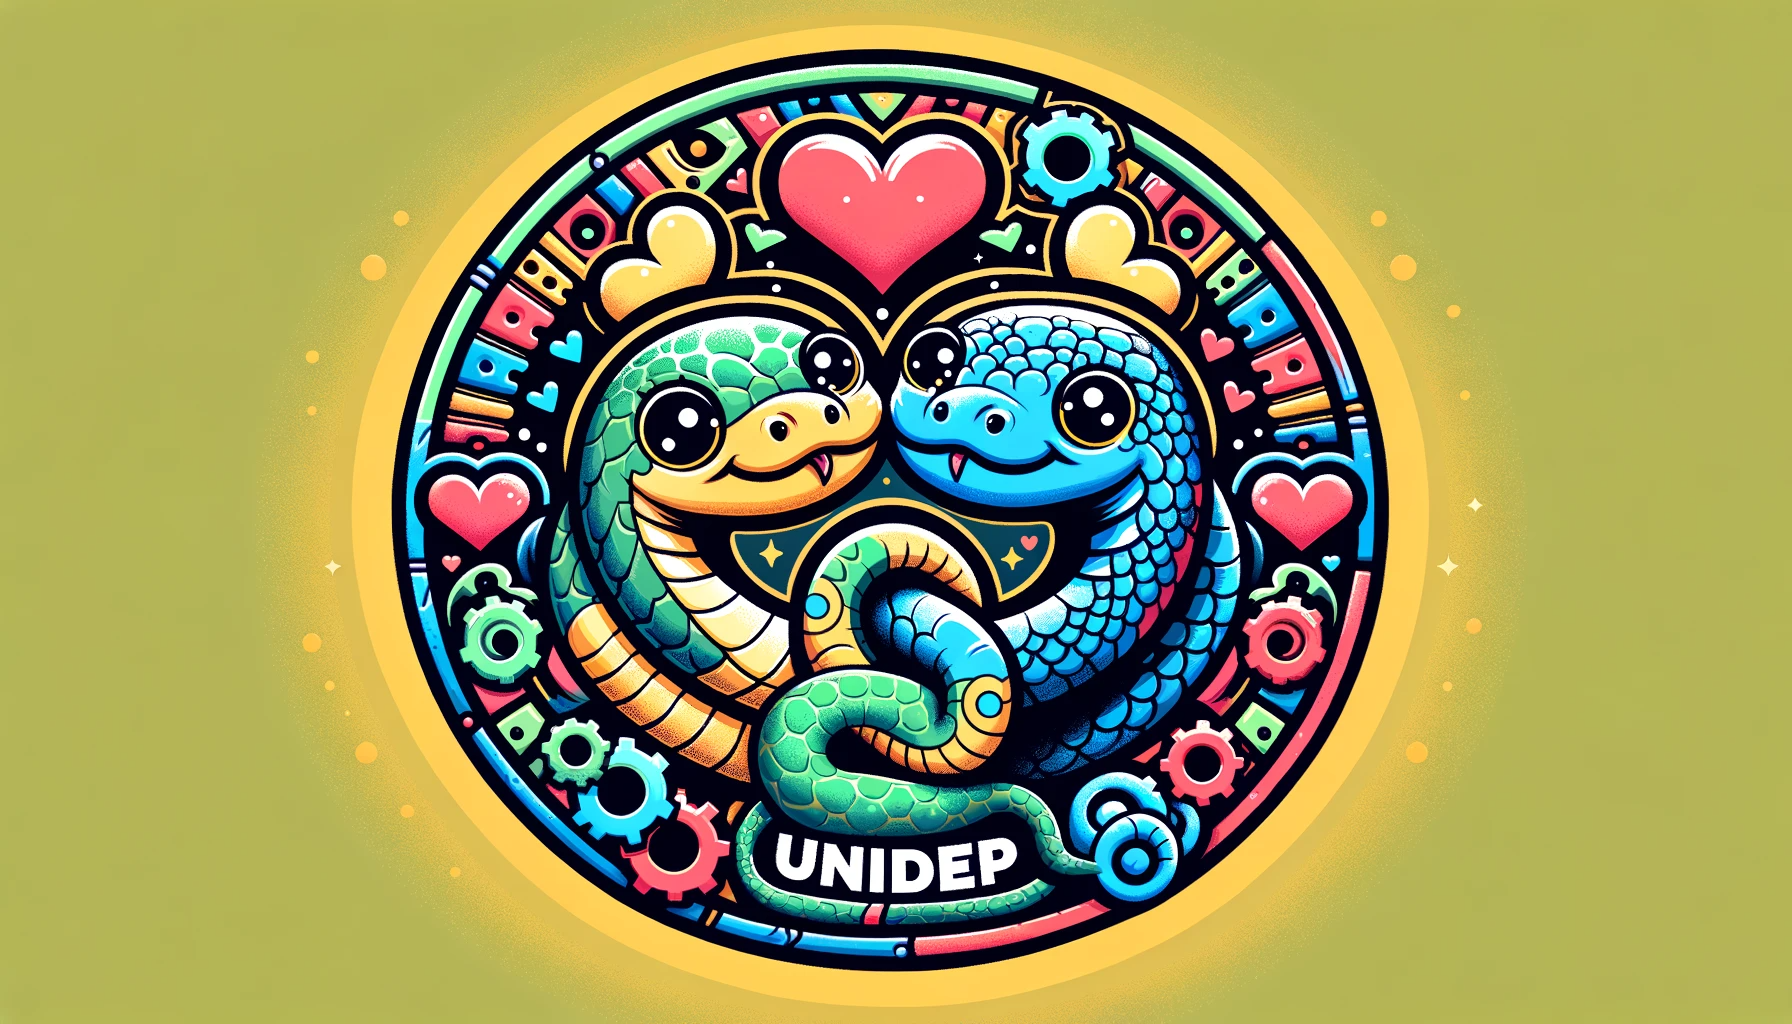 UniDep logo